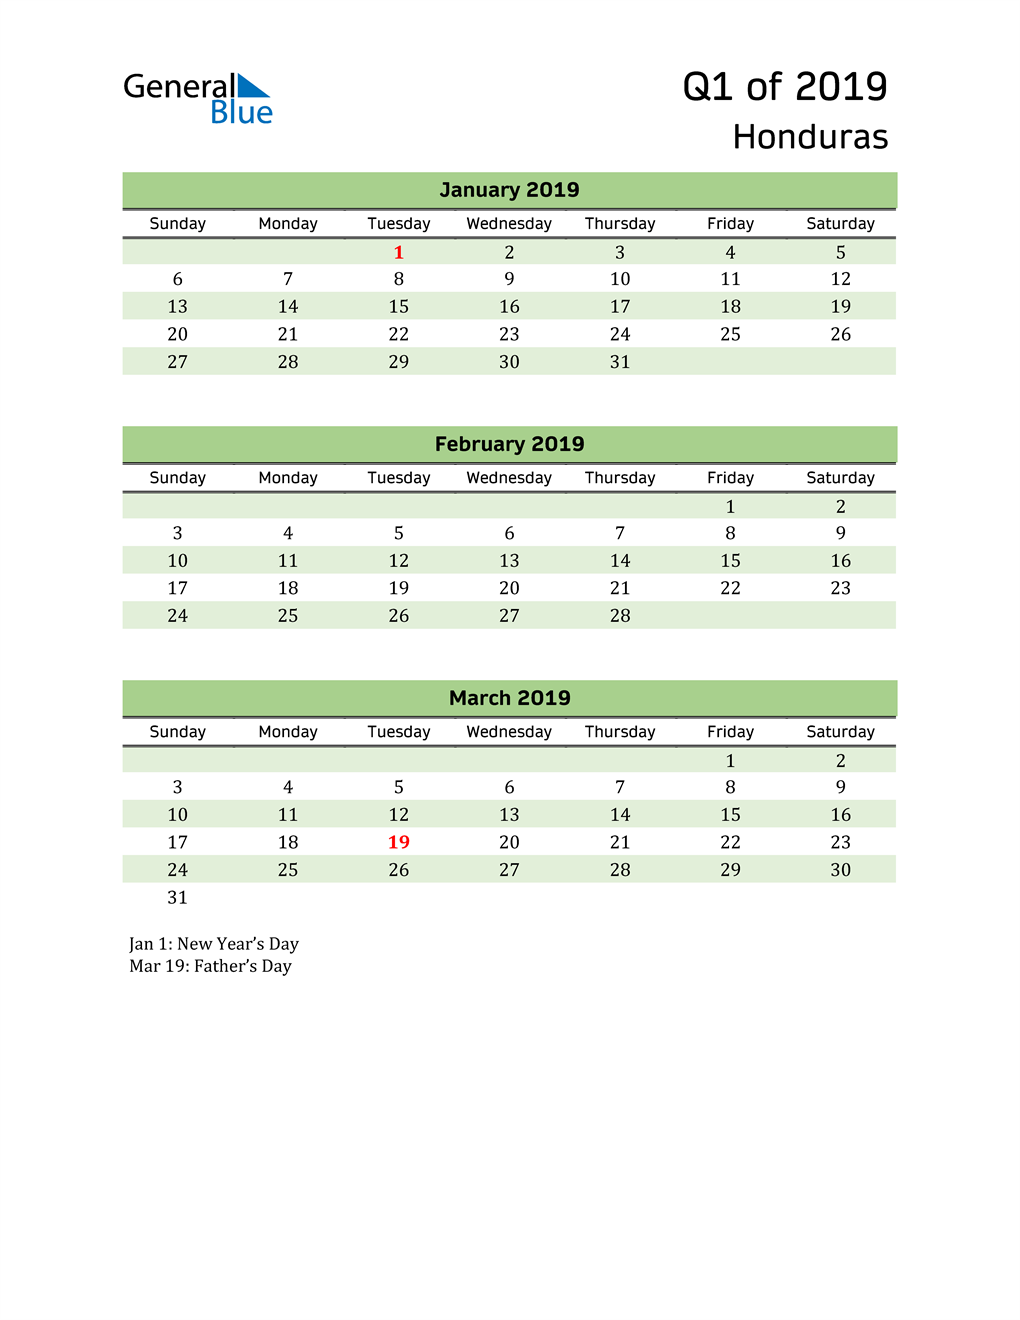  Quarterly Calendar 2019 with Honduras Holidays 